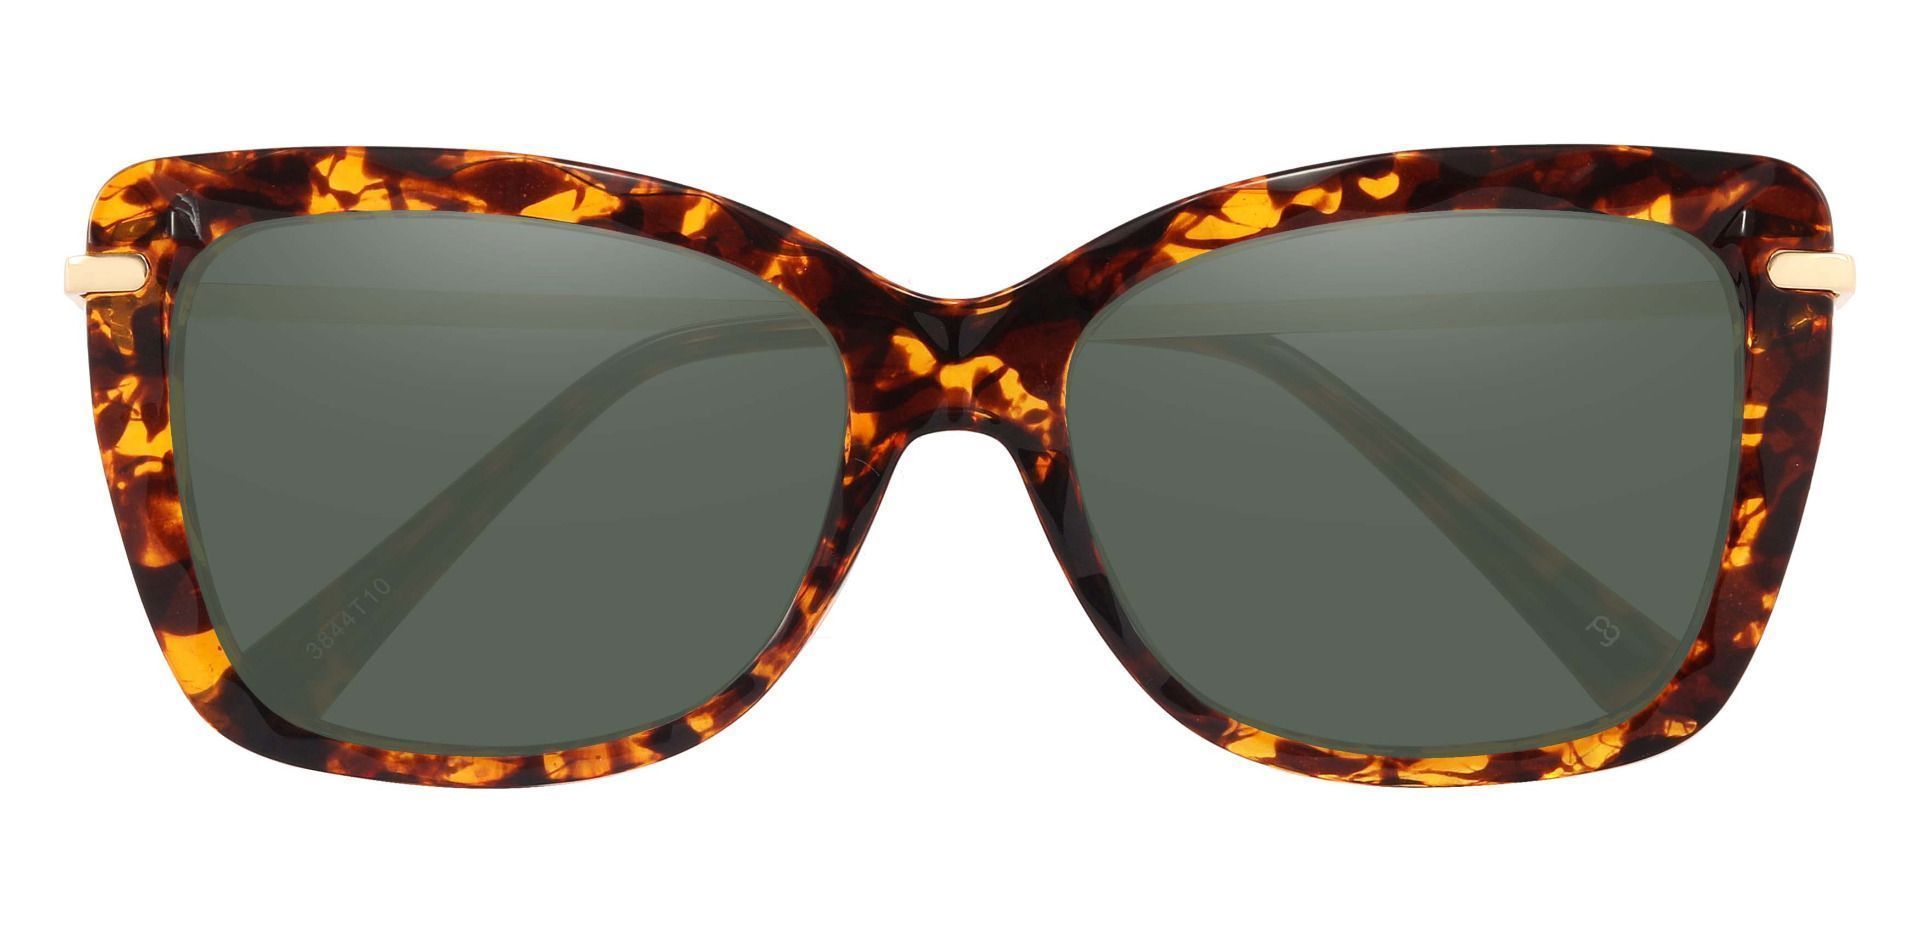 Shoshanna Rectangle Progressive Sunglasses - Tortoise Frame With Green Lenses